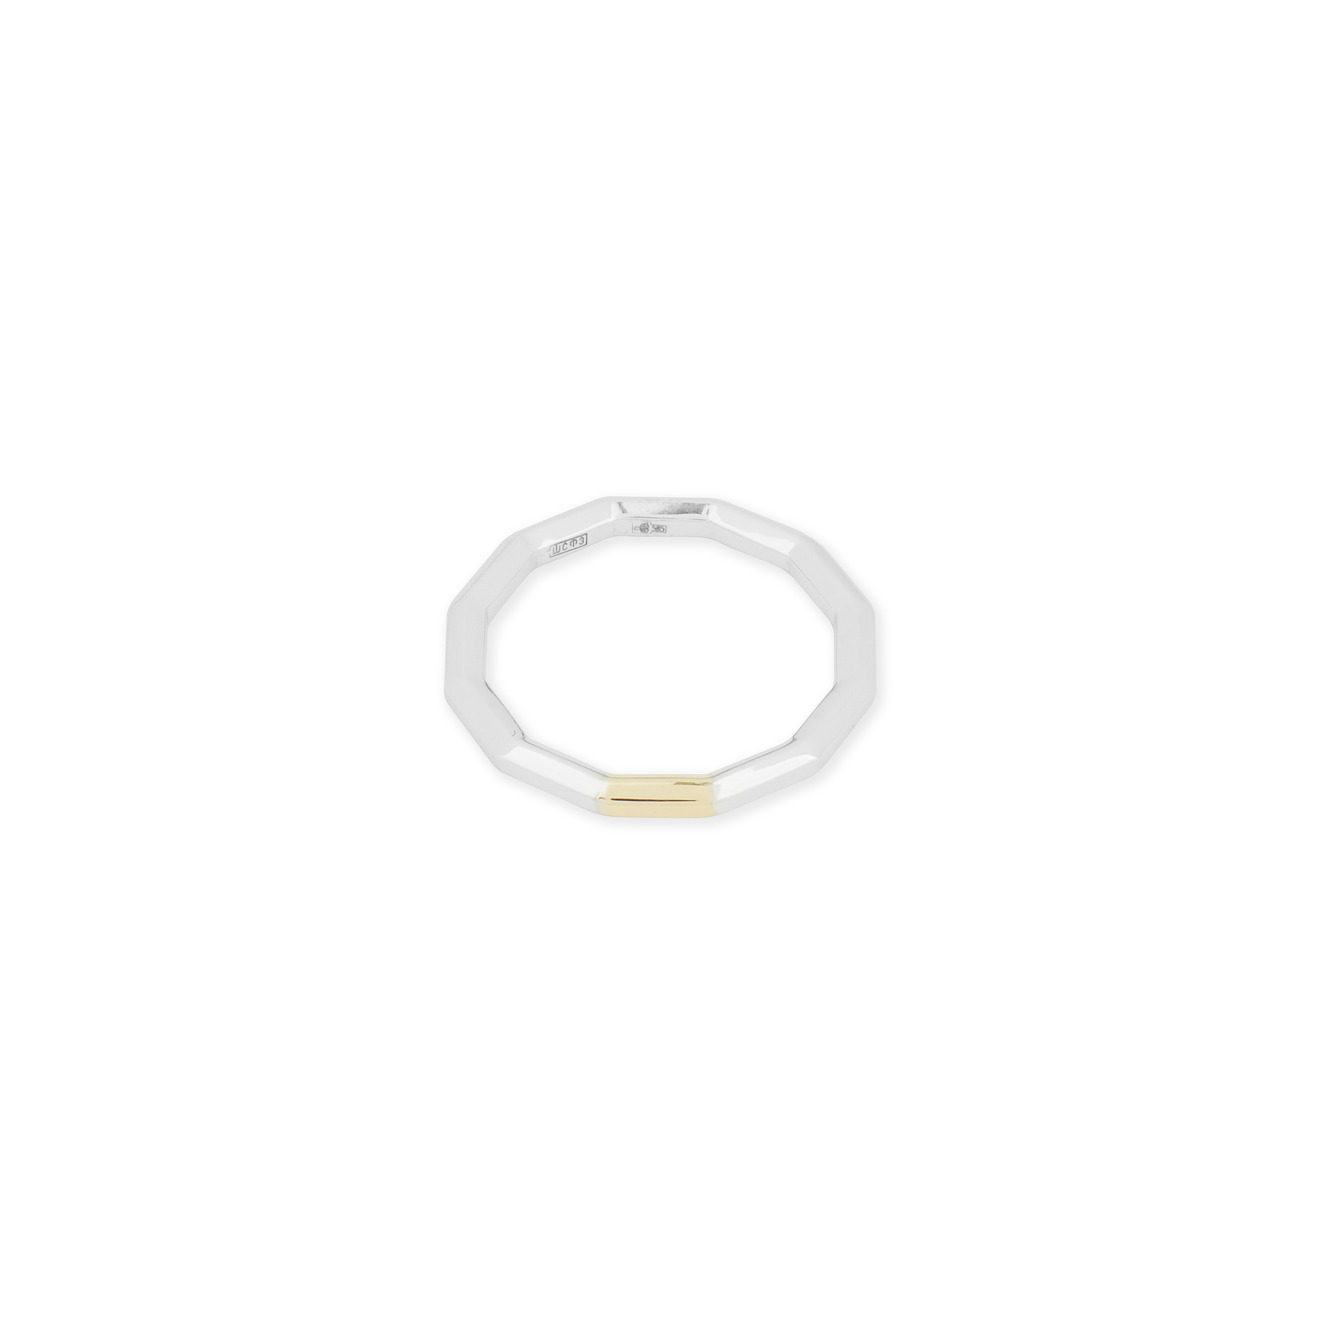 Avgvst Обручальное кольцо из золота Double Gold с сегментом из лимонного золота avgvst фламандское среднее кольцо из белого золота